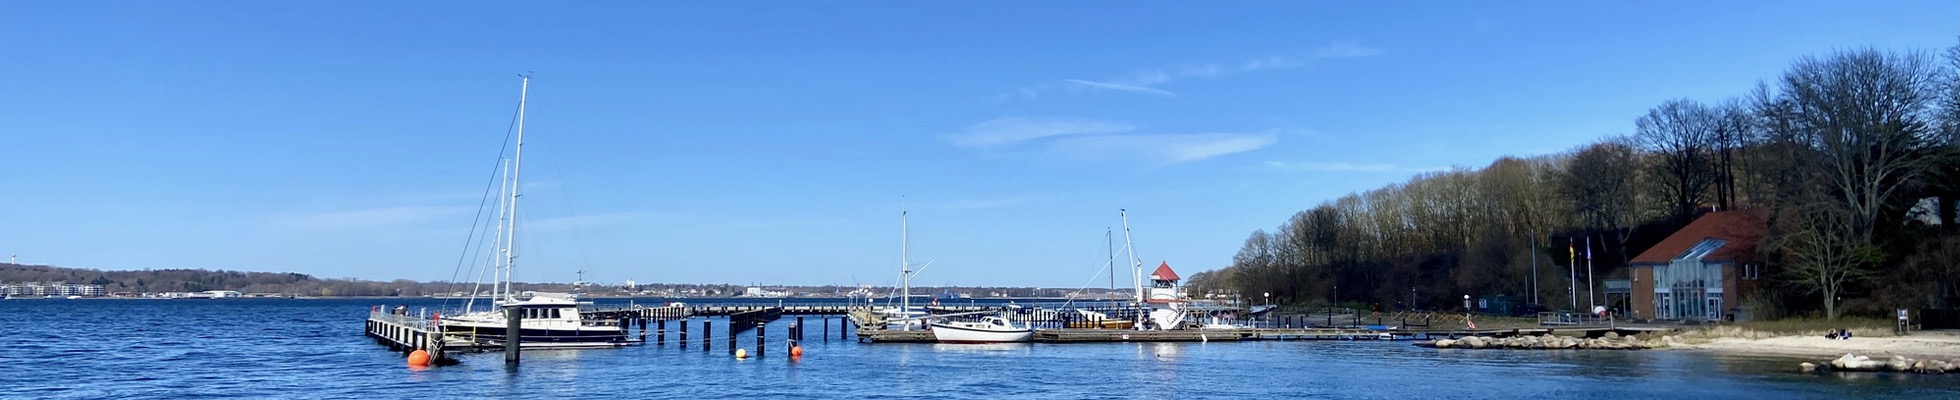 Der Segler-Hafen von Mönkeberg in der Kieler Bucht